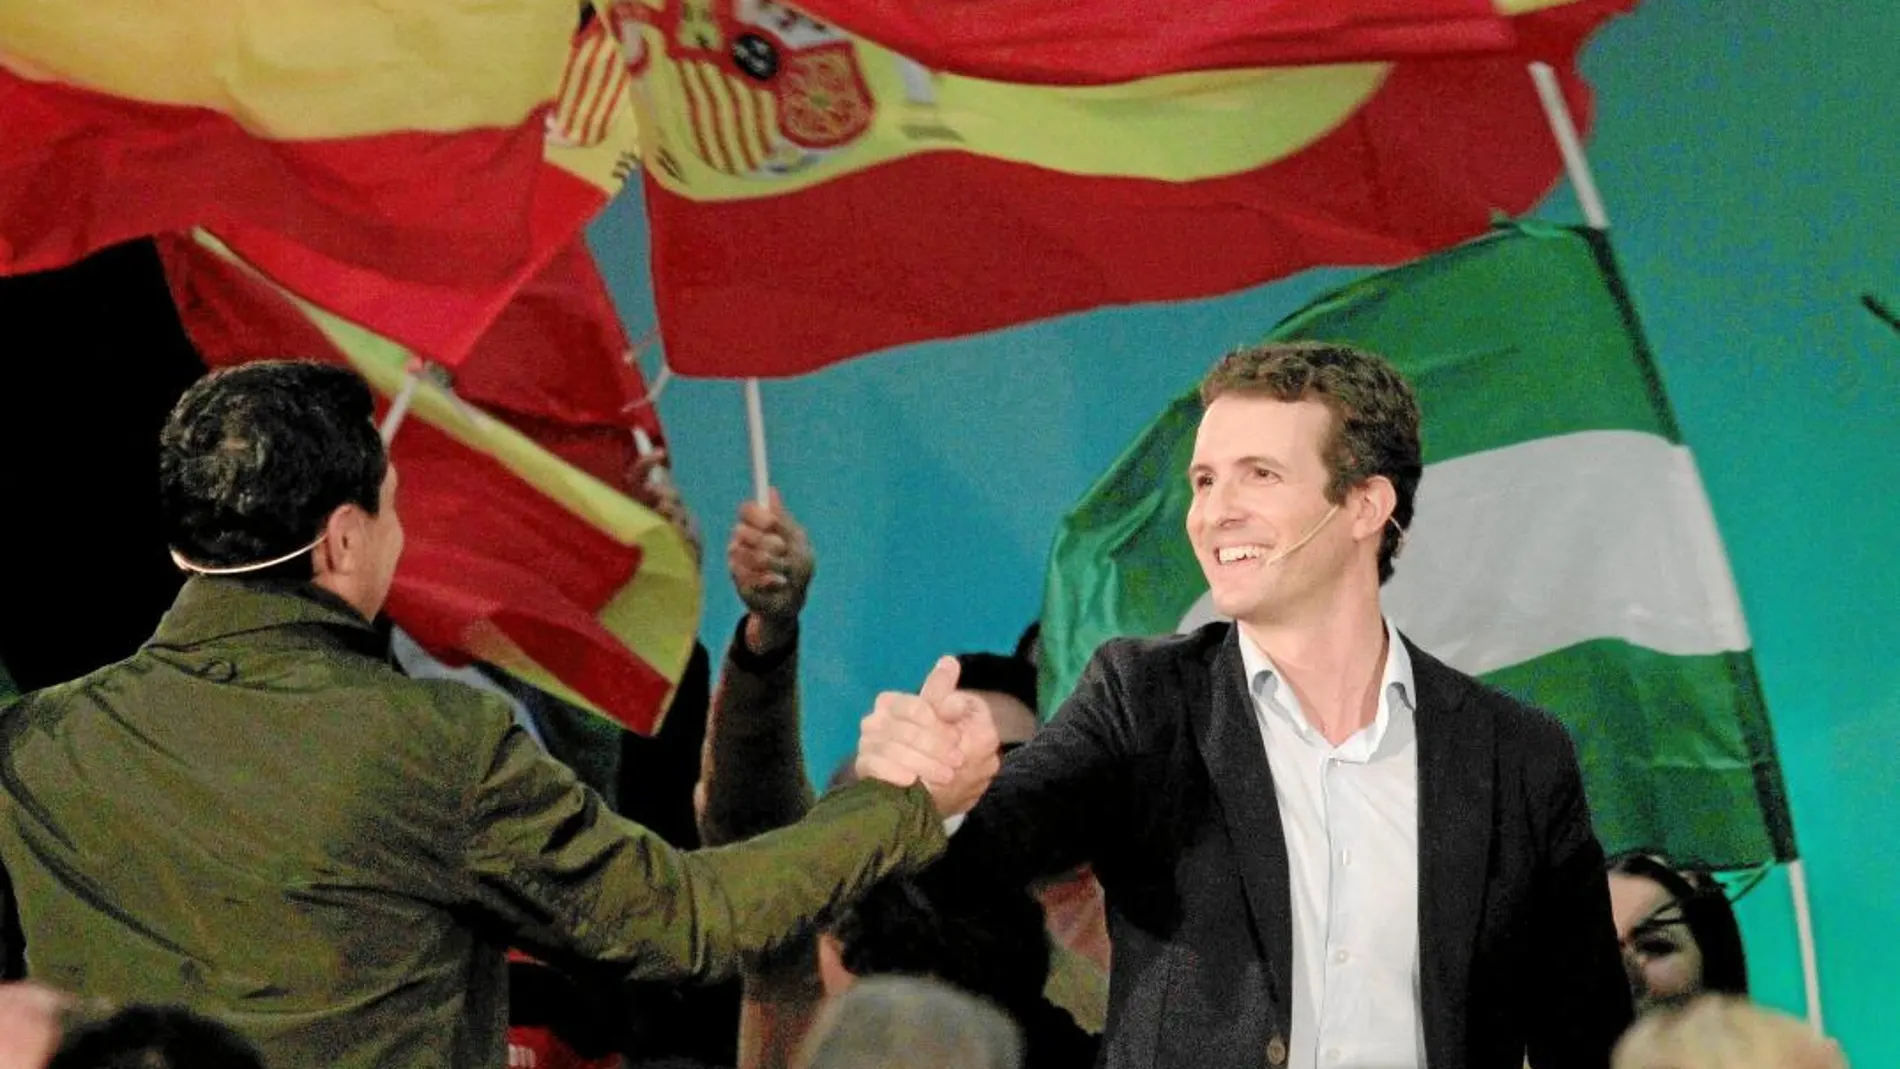 El líder del PP, Pablo Casado, acompañó ayer a Juanma Moreno en un acto de campaña en Algeciras / Efe